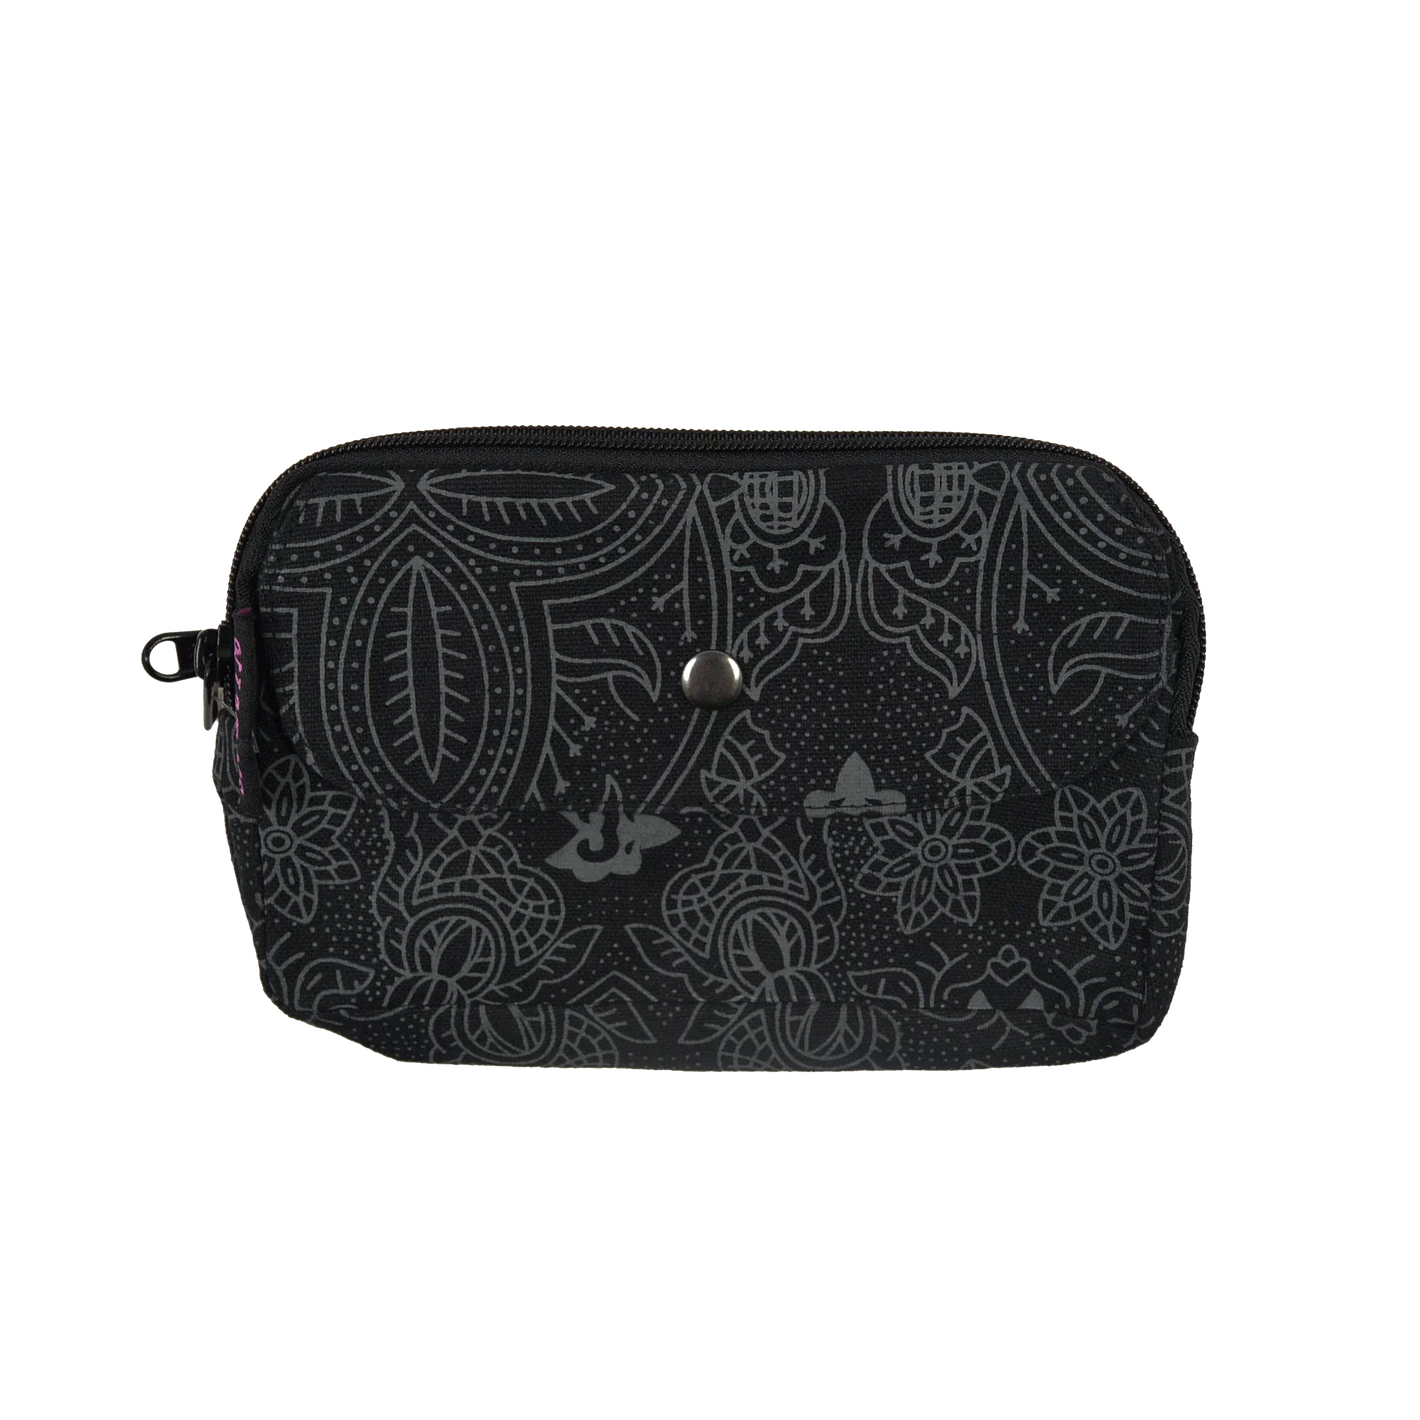 Beuteltsche aus Canvas schwarz mit floralem Muster. Die Tasche besitzt Reisverschlussfächer und ein Einsteckfach vorne.